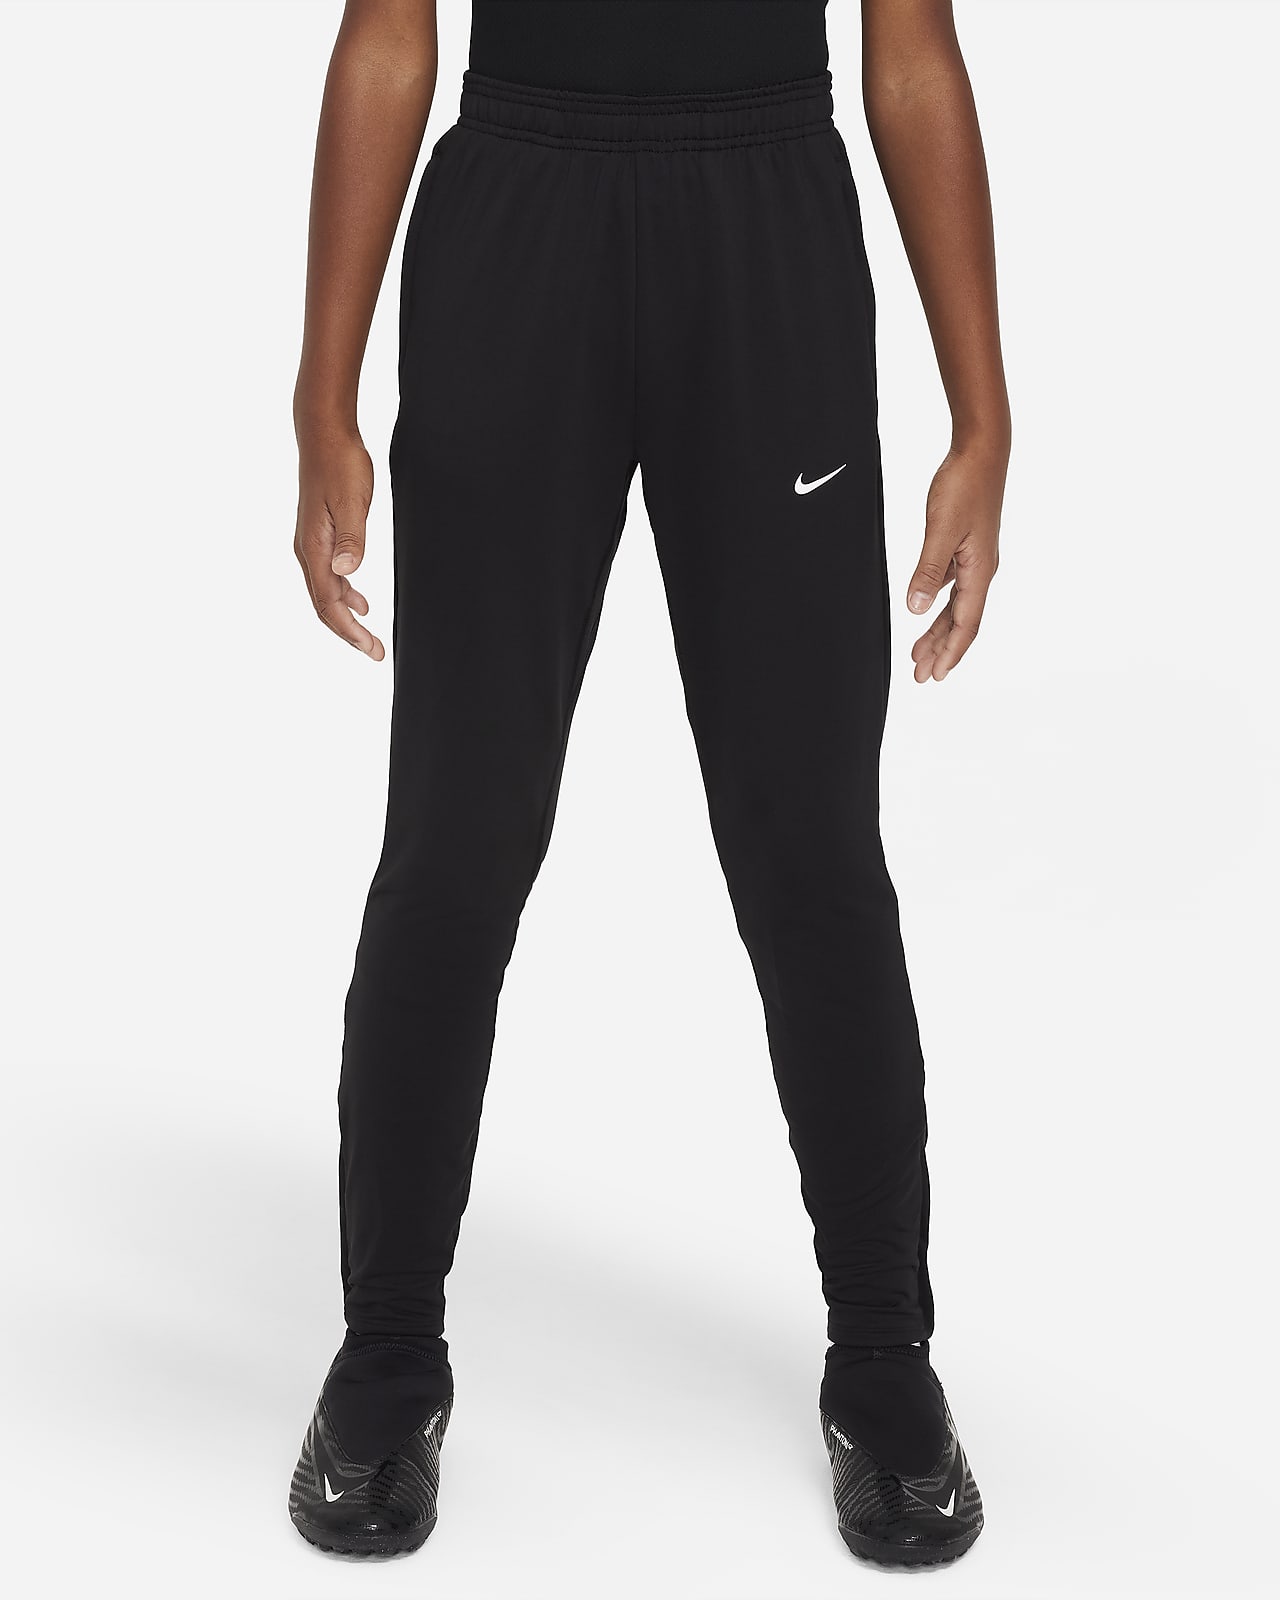 Nike Dri-FIT Strike Pantalons de futbol - Nen/a